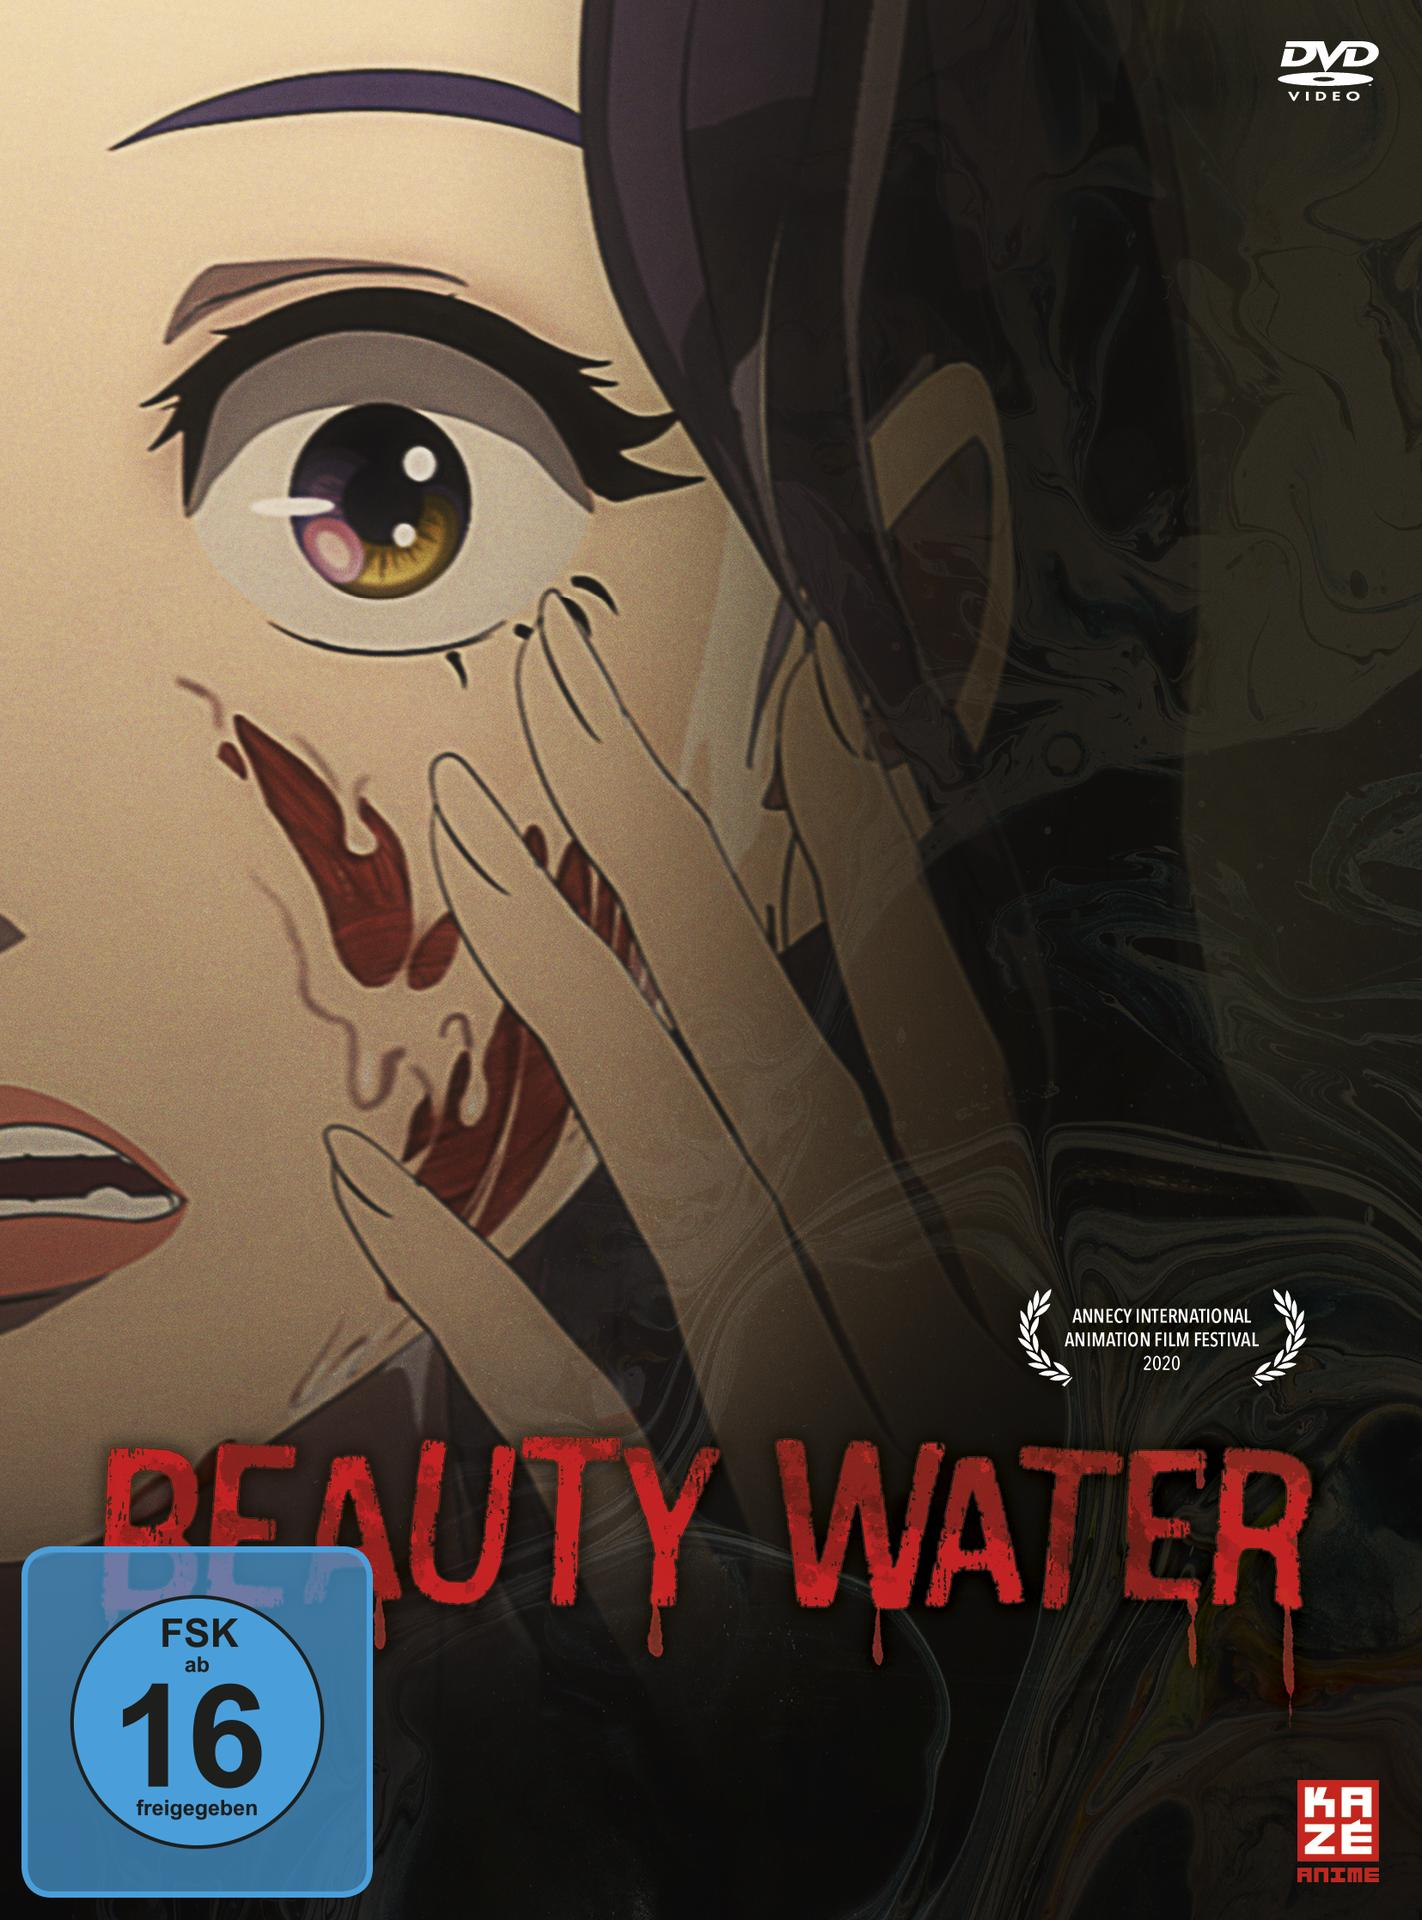 Beauty Water DVD